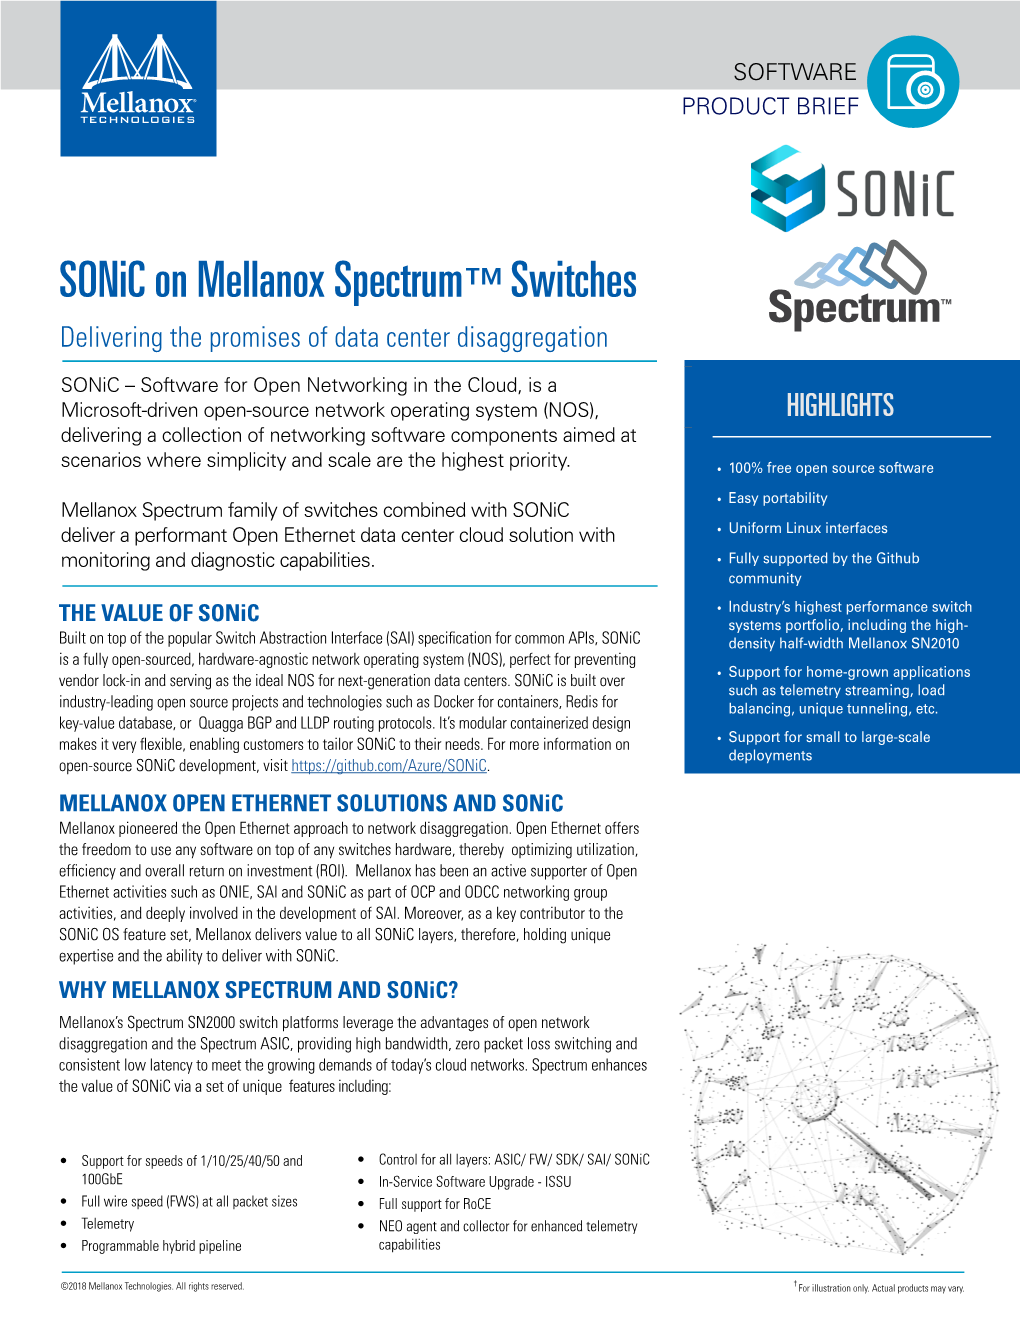 Sonic on Mellanox Spectrum™ Switches